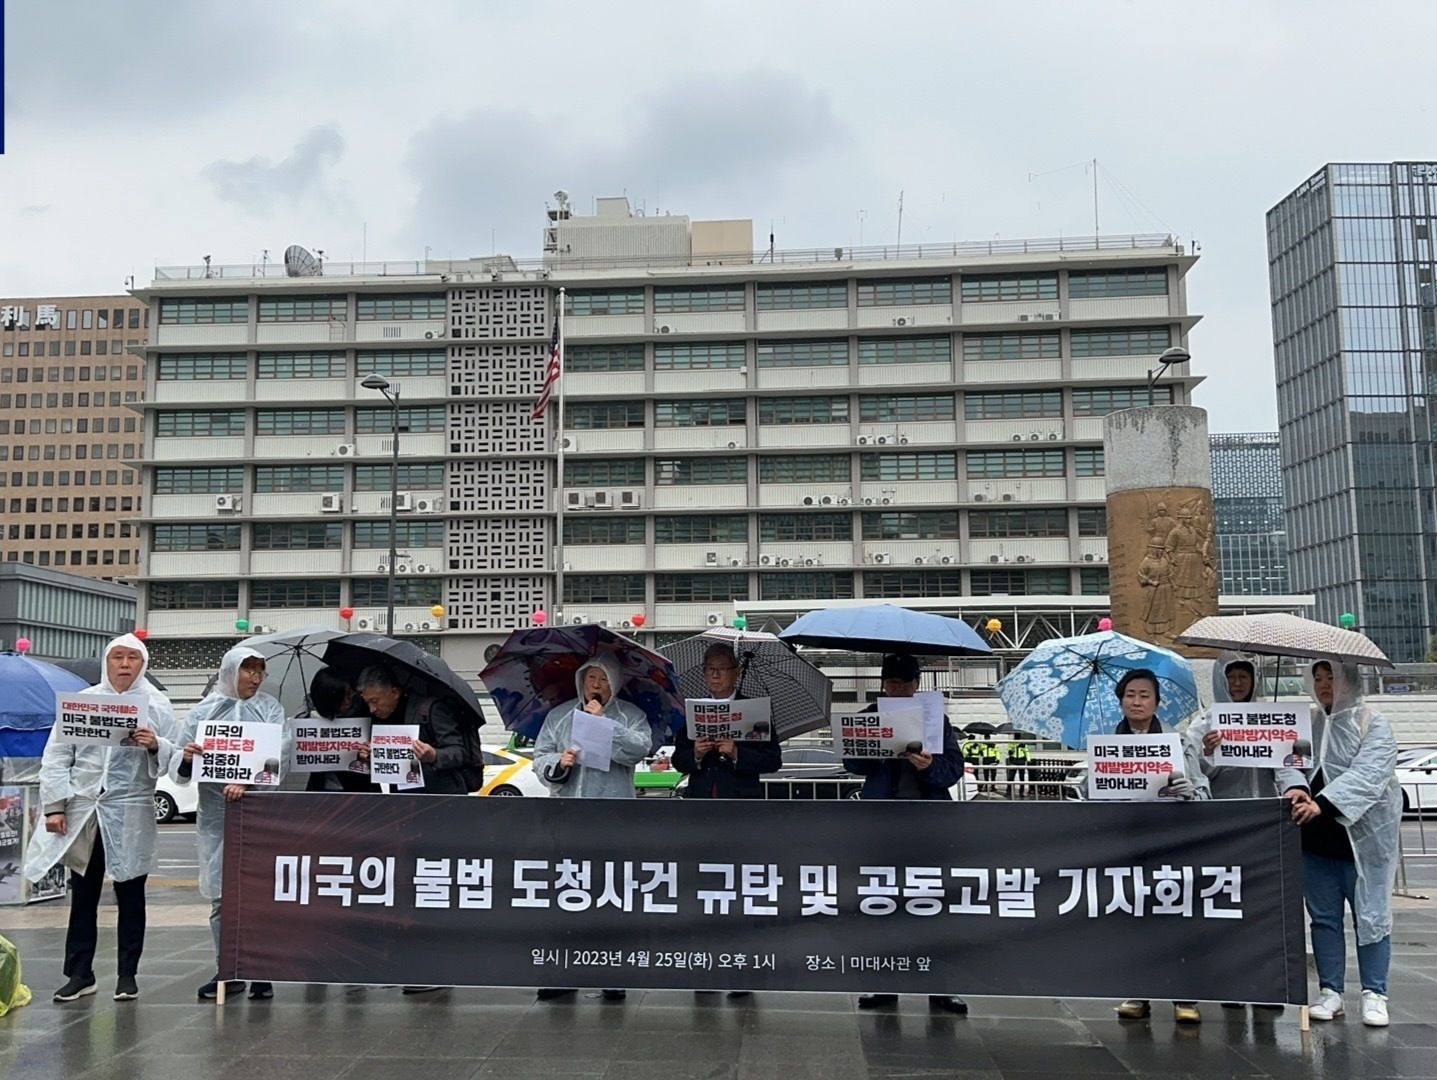 韩国民间团体抗议美国对韩国政府实施窃听及监听